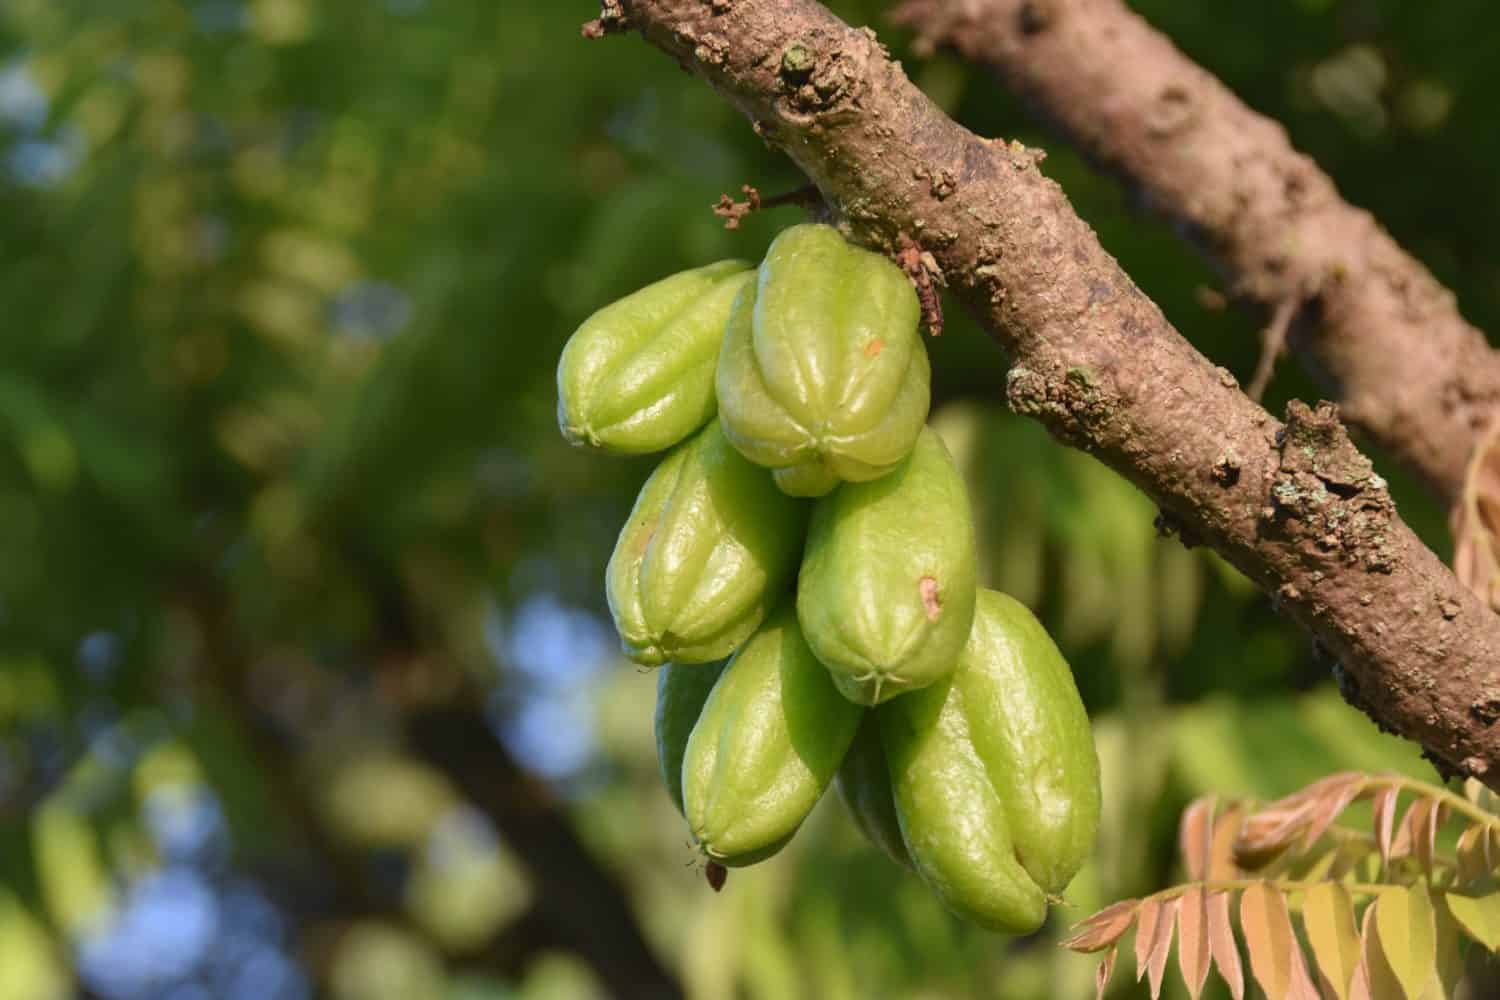 Averrhoa bilimbi (comunemente noto come bilimbi, albero di cetriolo o acetosella) è un albero da frutto del genere Averrhoa, famiglia delle Oxalidaceae